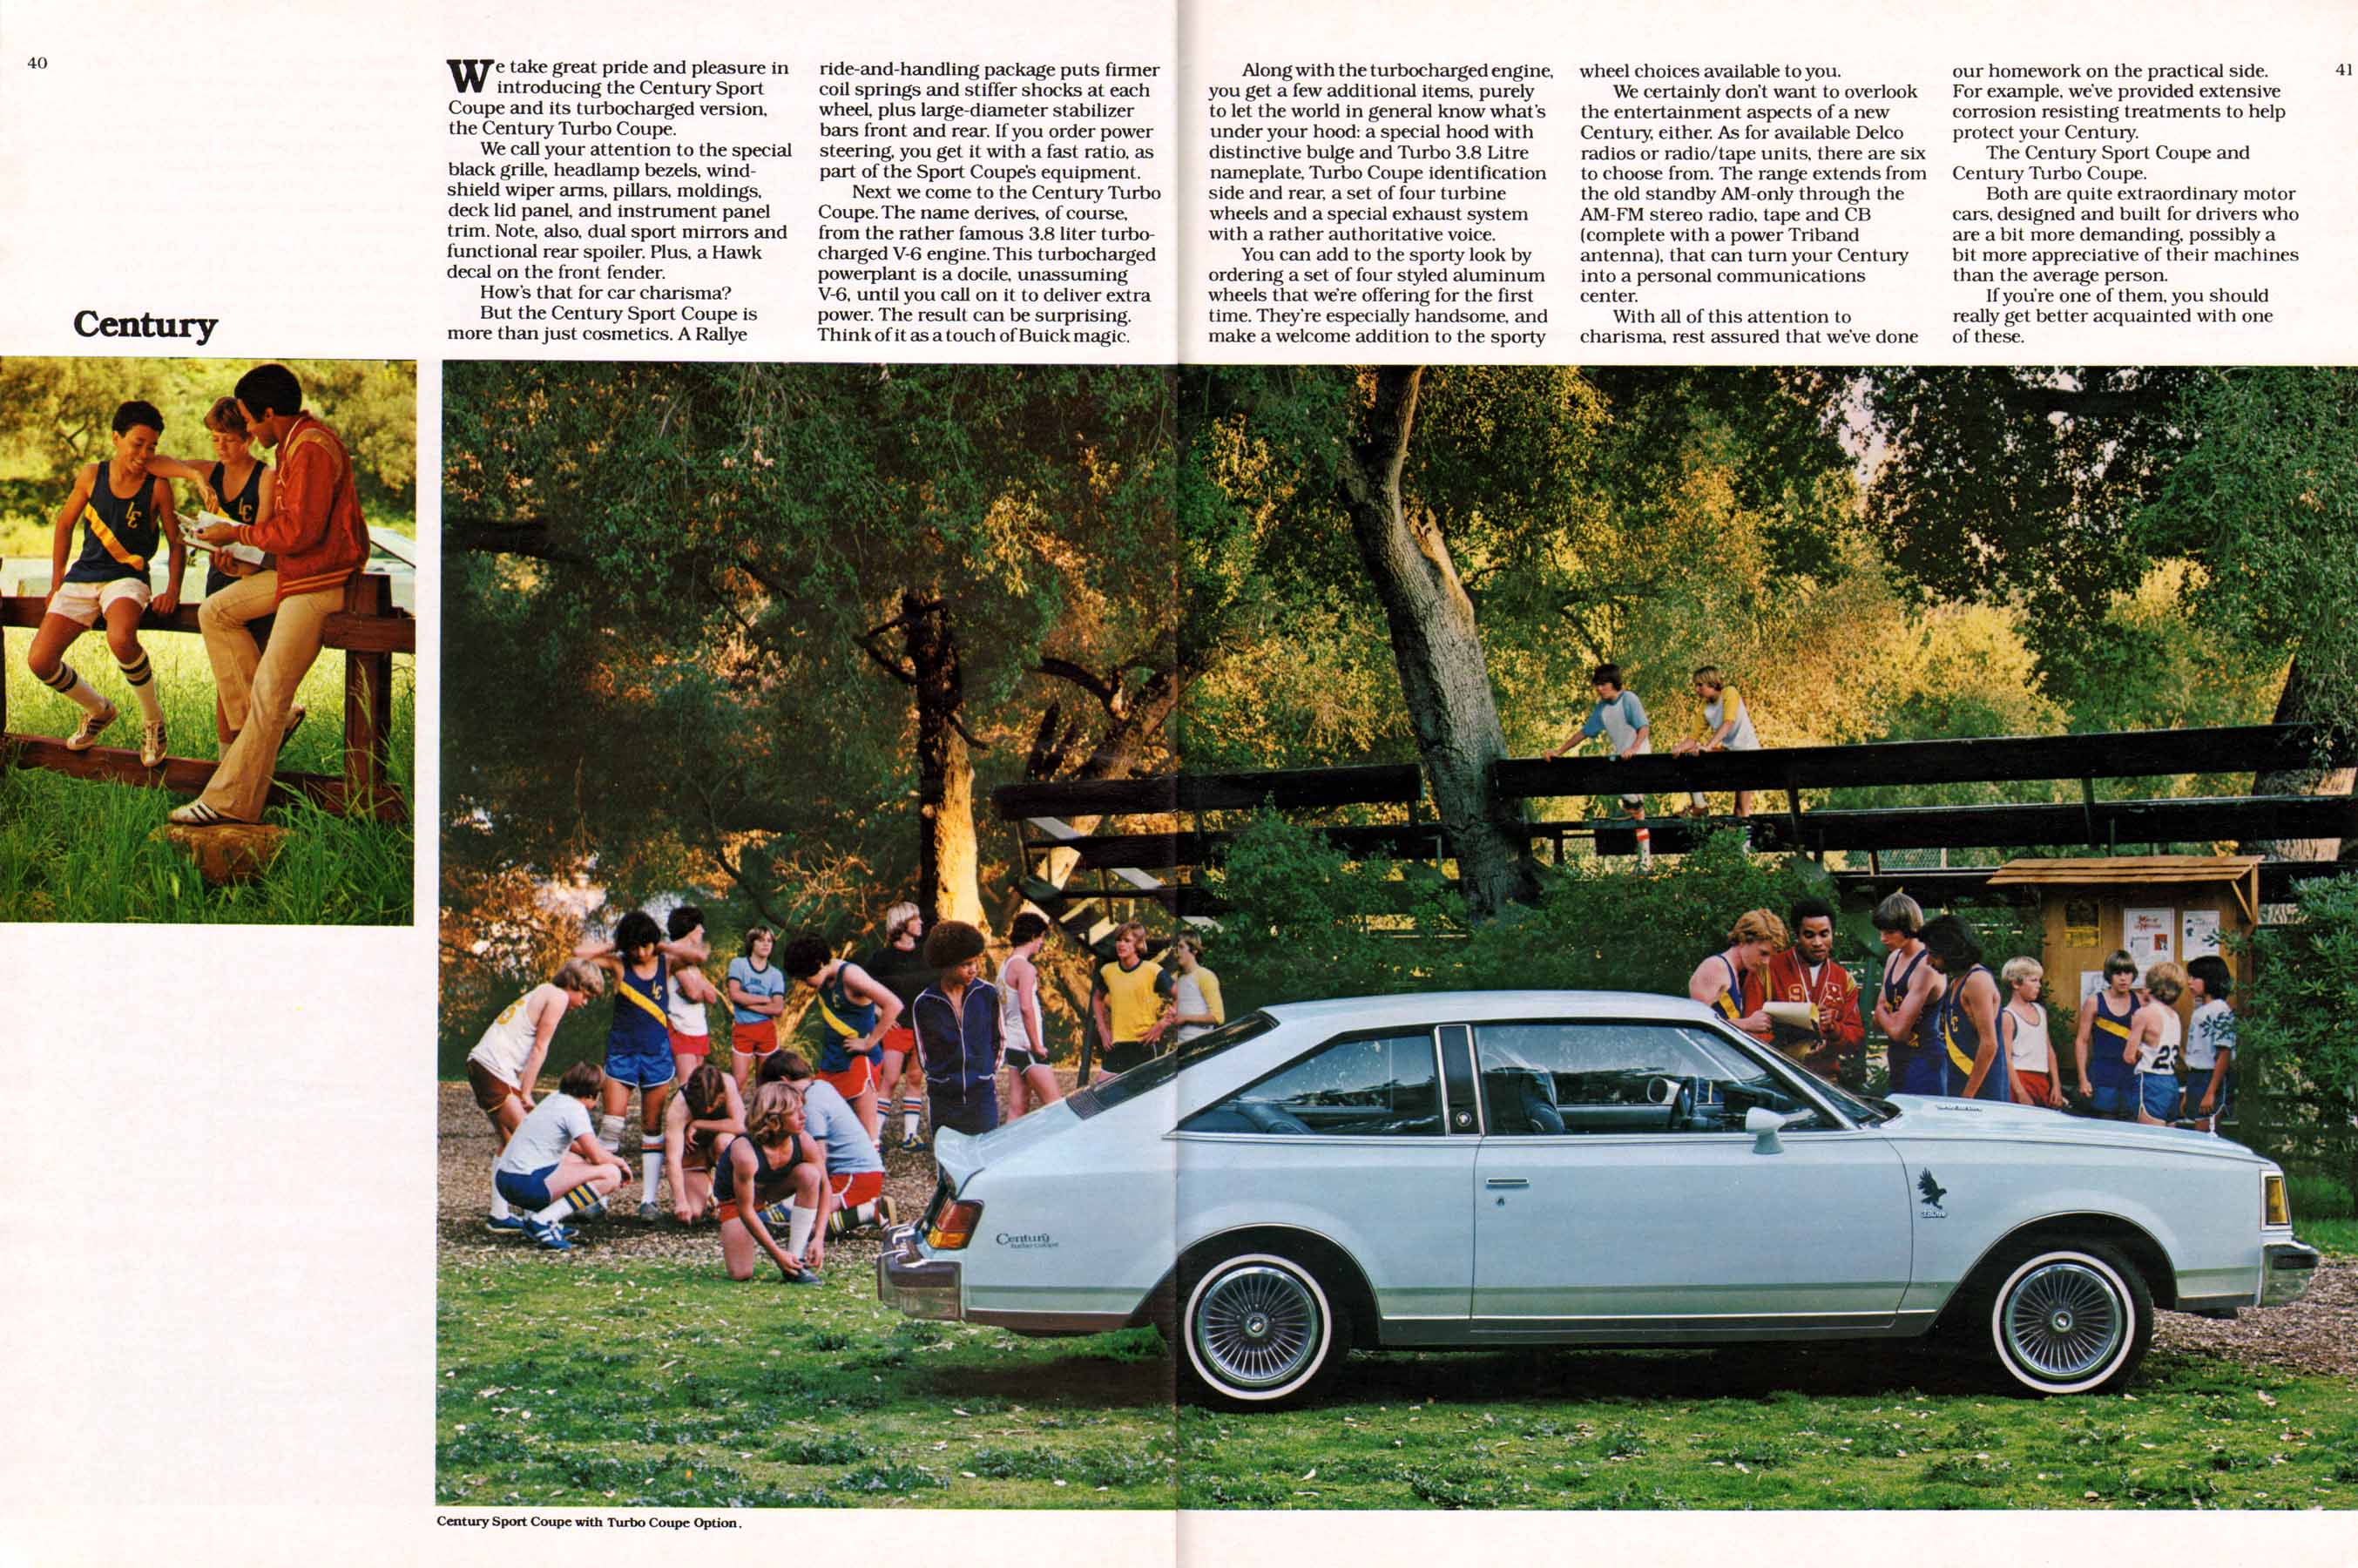 1980 Buick Full Line Prestige-40-41